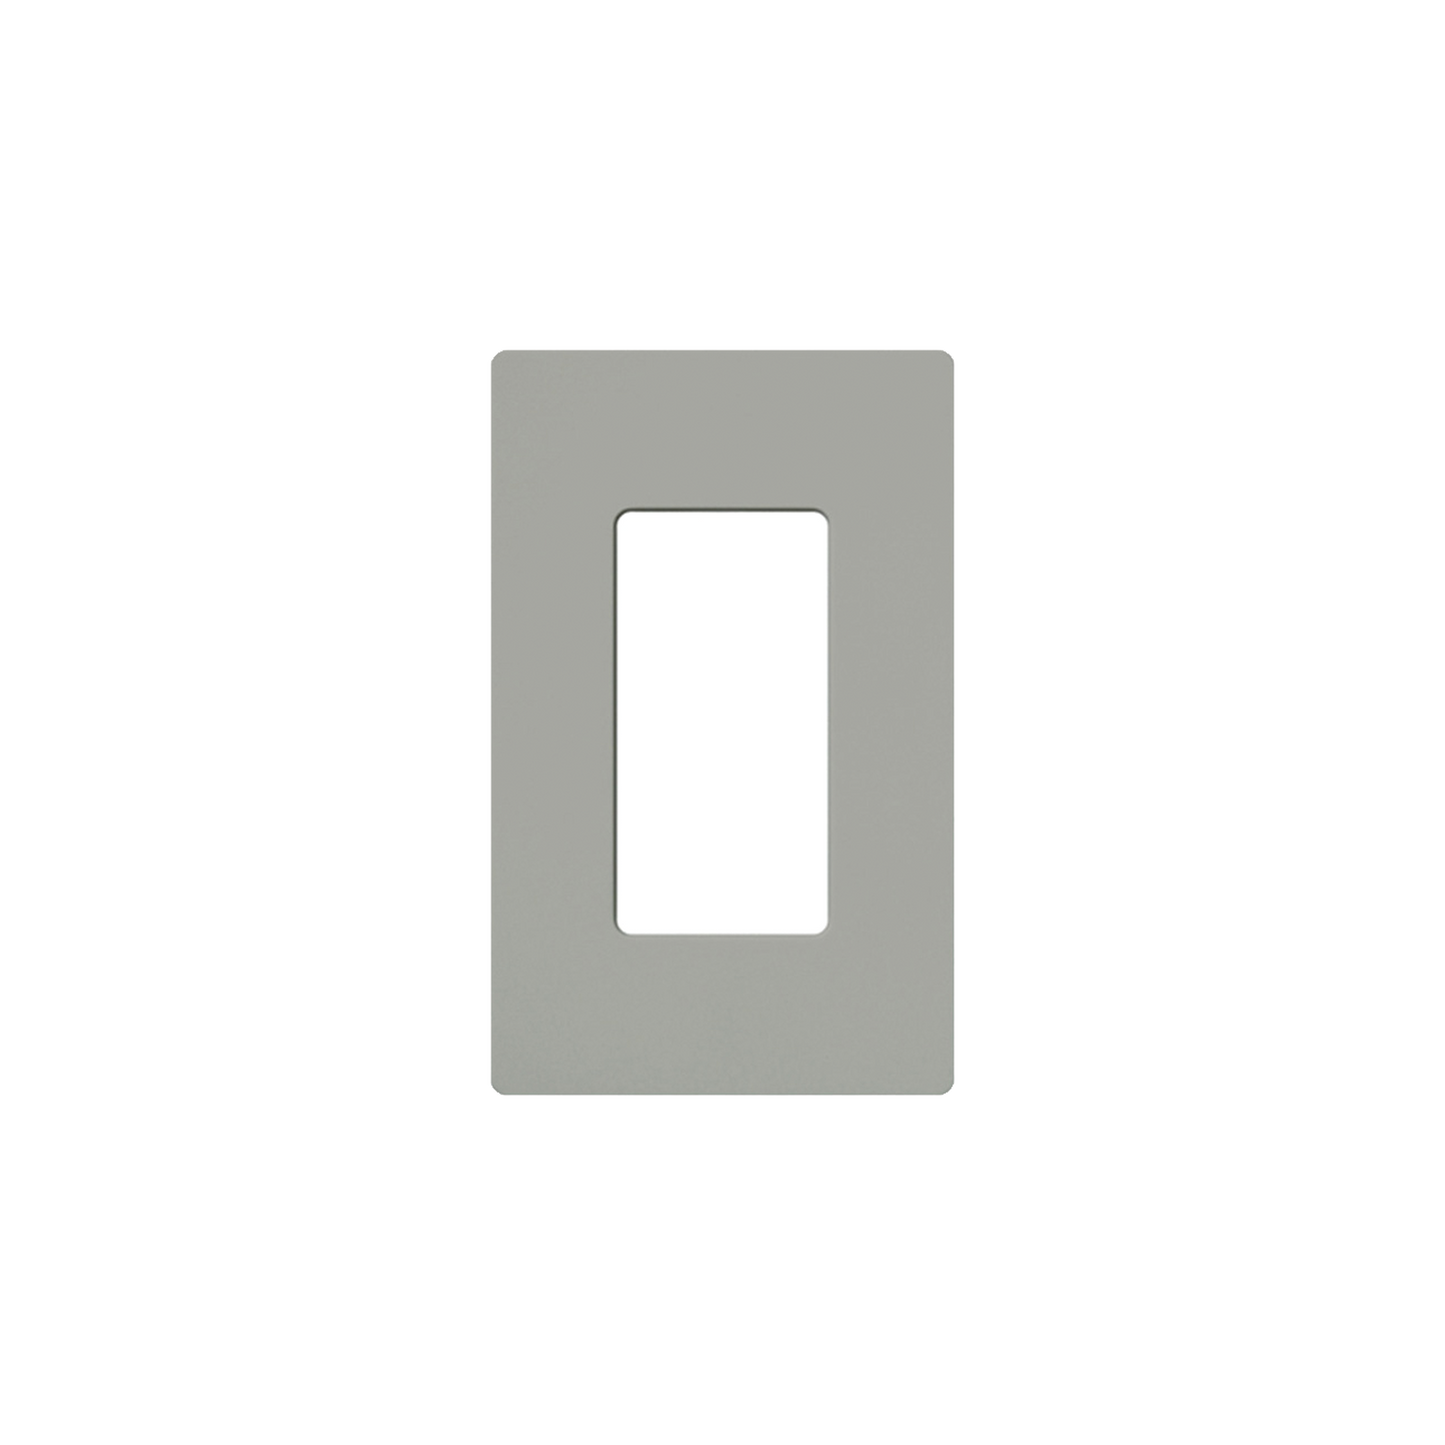 Placa de pared 1 espacio, para atenuador (dimmer), switch ó control remoto PICO inalámbrico.